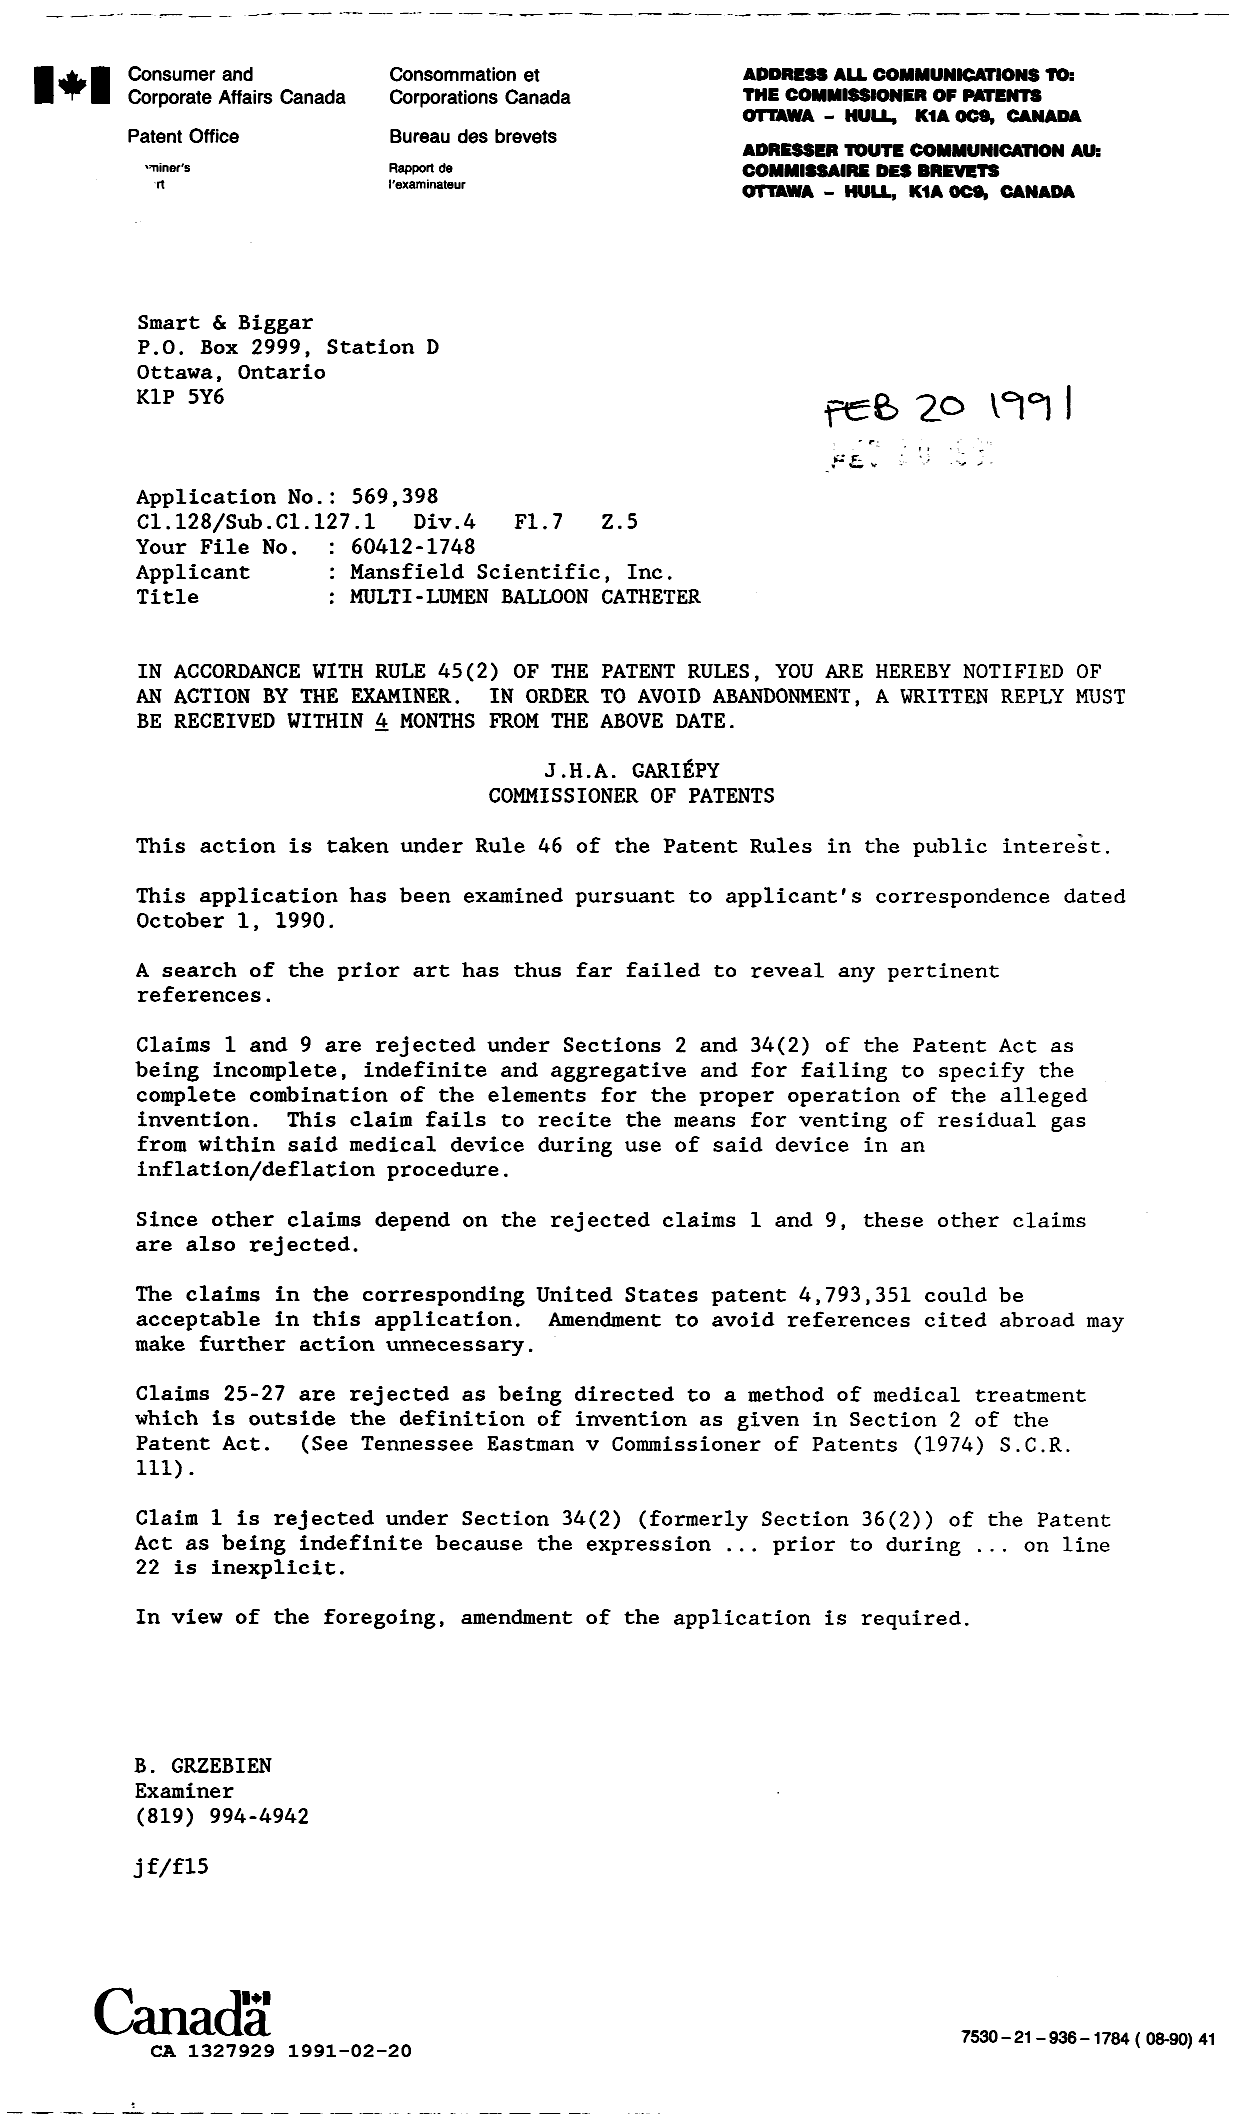 Document de brevet canadien 1327929. Demande d'examen 19910220. Image 1 de 1